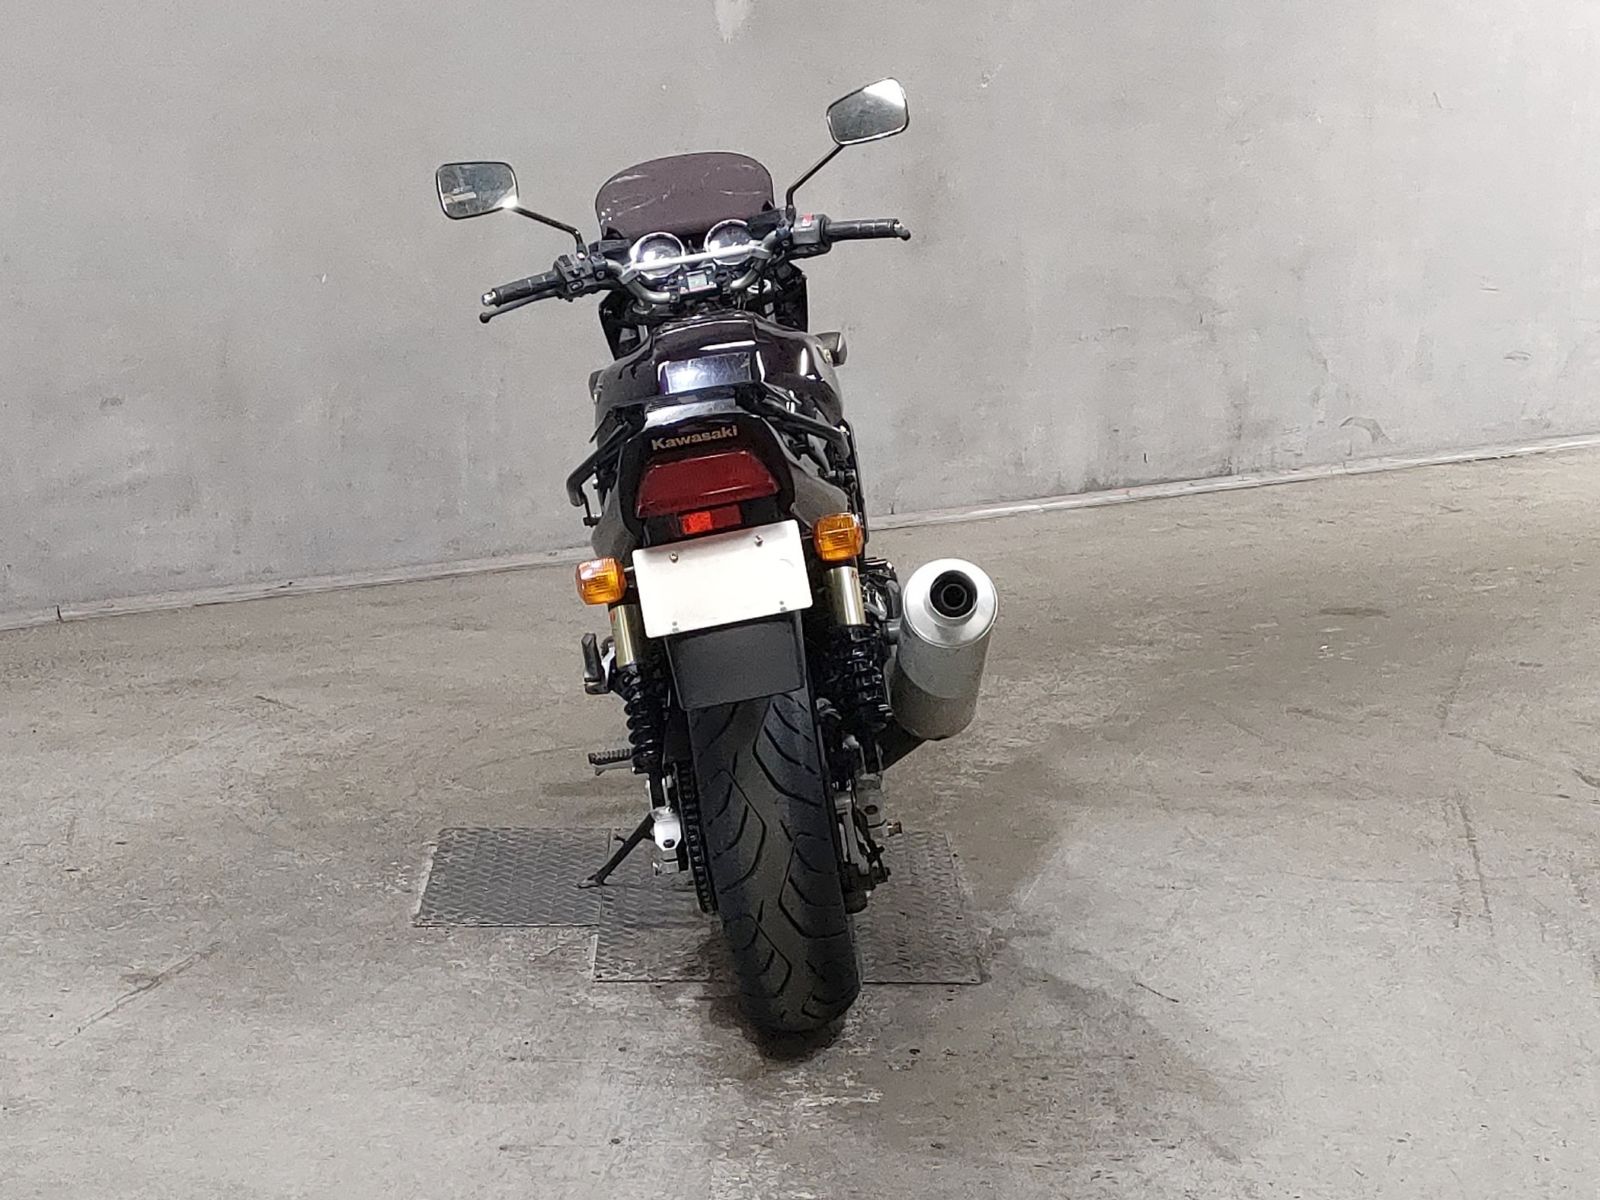 Kawasaki ZRX 1100 ZRT10C - купить недорого